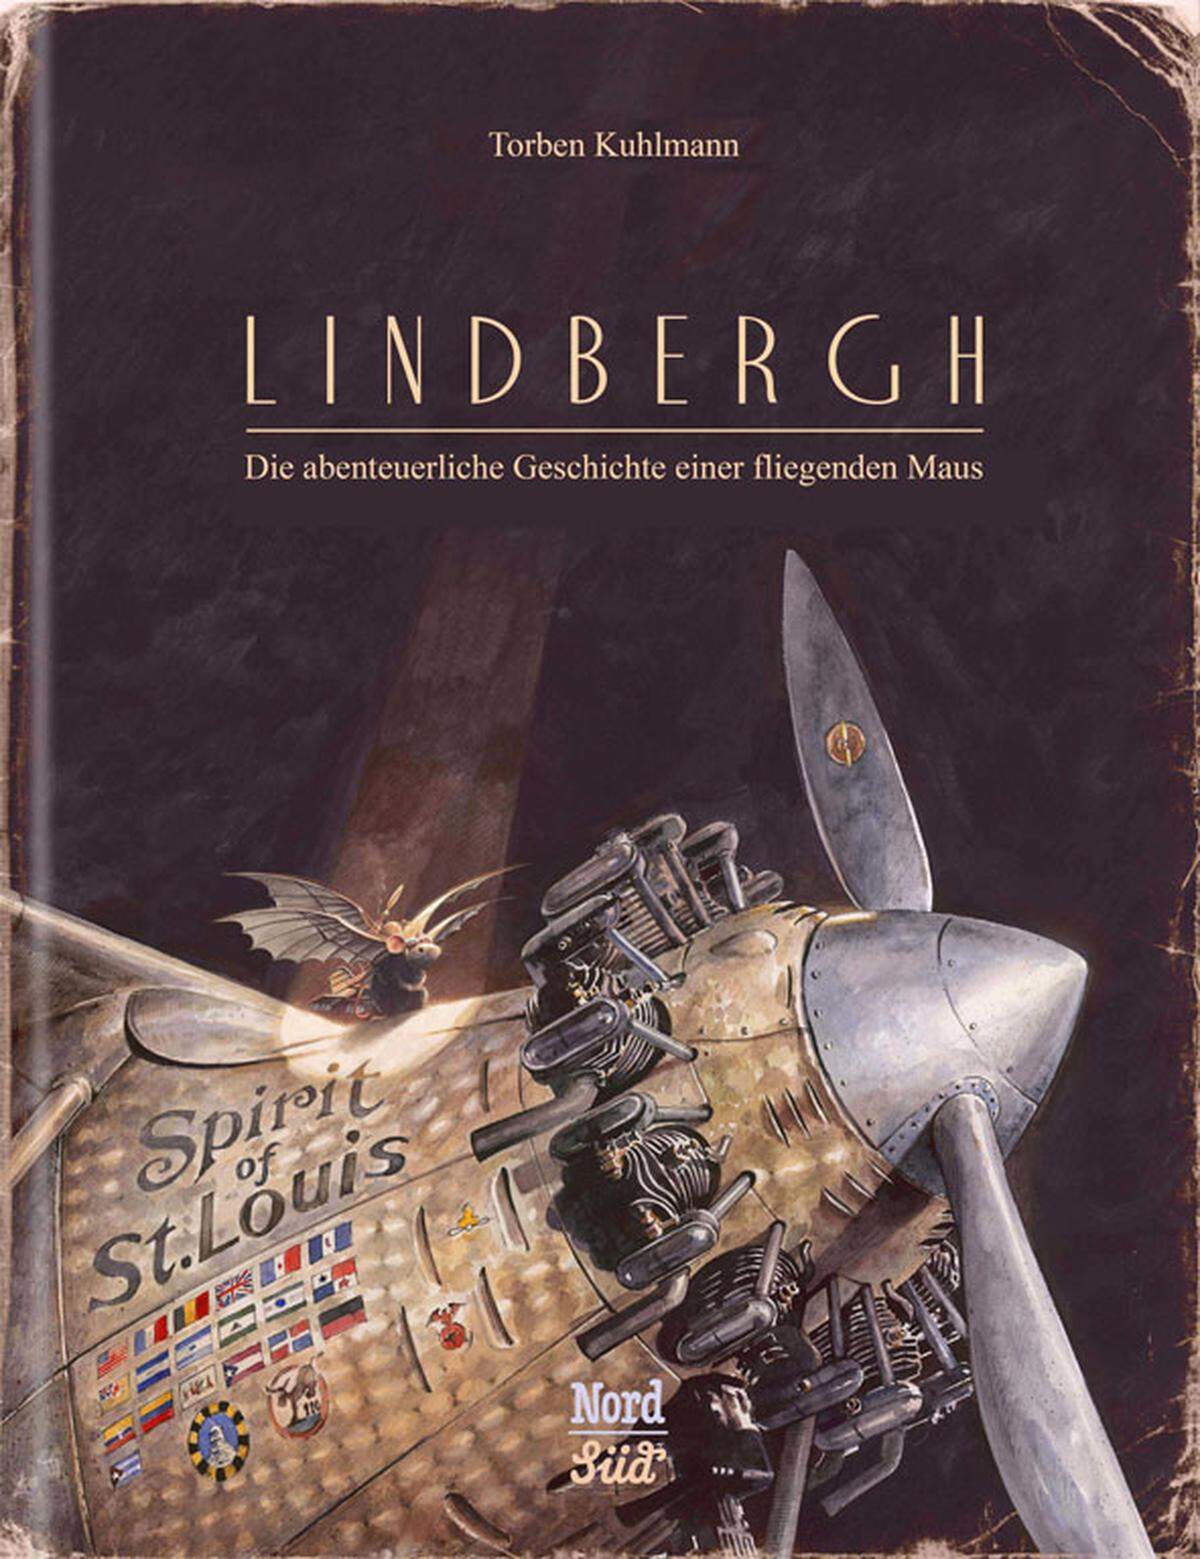 In Kinderbüchern wimmelt es von fliegenden Tieren. Doch "Lindbergh" hebt sich von der Masse ab, vor allem durch seine wunderschönen Bilder. Die stimmungsreichen Illustrationen ziehen den kleinen Leser in die Welt einer kleinen Maus, die ihrer gefährlichen Welt zu entkommen sucht, indem sie ein Flugzeug konstruiert. "Lindbergh", erschienen im NordSüd Verlag, ist der 96 Seiten starke Erstling des deutschen Autors Torben Kuhlmann, von dem man wohl noch einiges erhoffen darf. Übrigens: Es gibt auch einen Trailer zum Buch.Alter: Ab fünf Jahren.